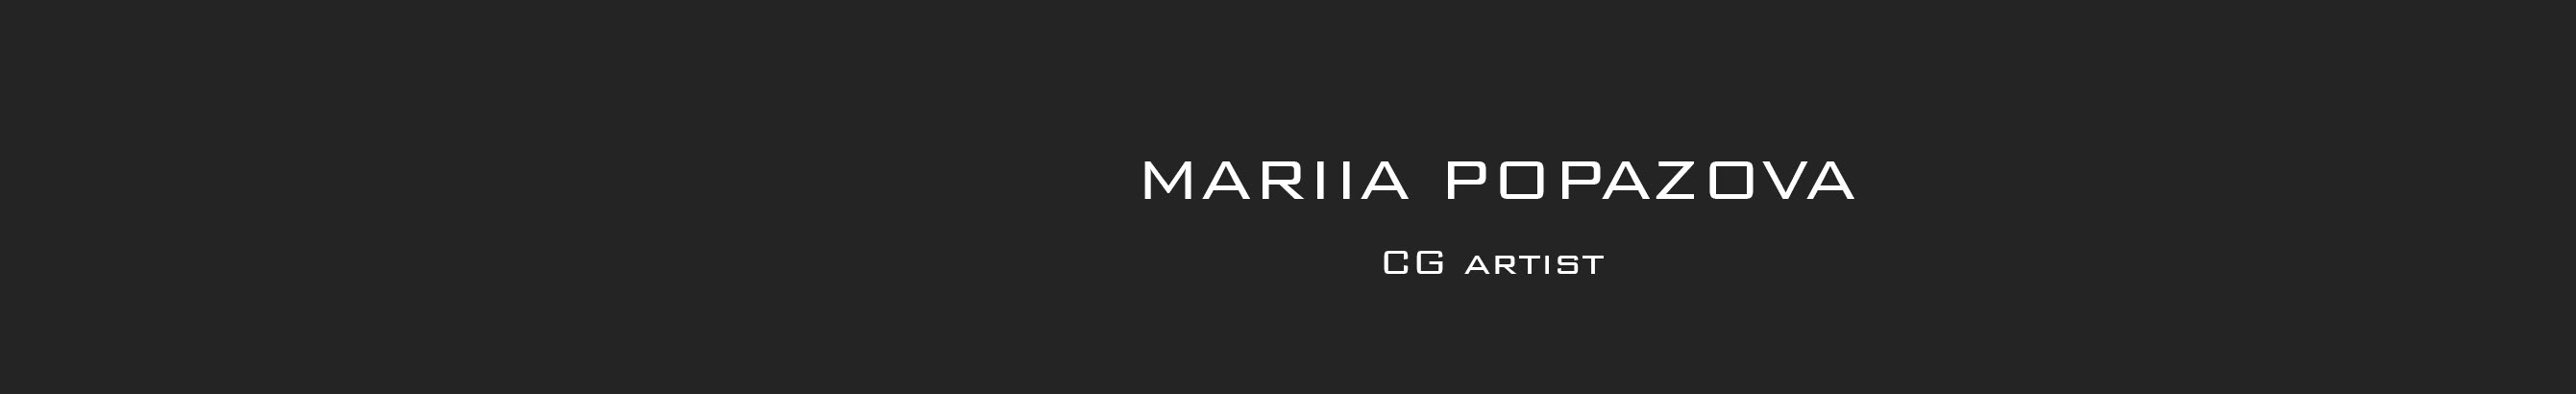 Mariia Popazova's profile banner